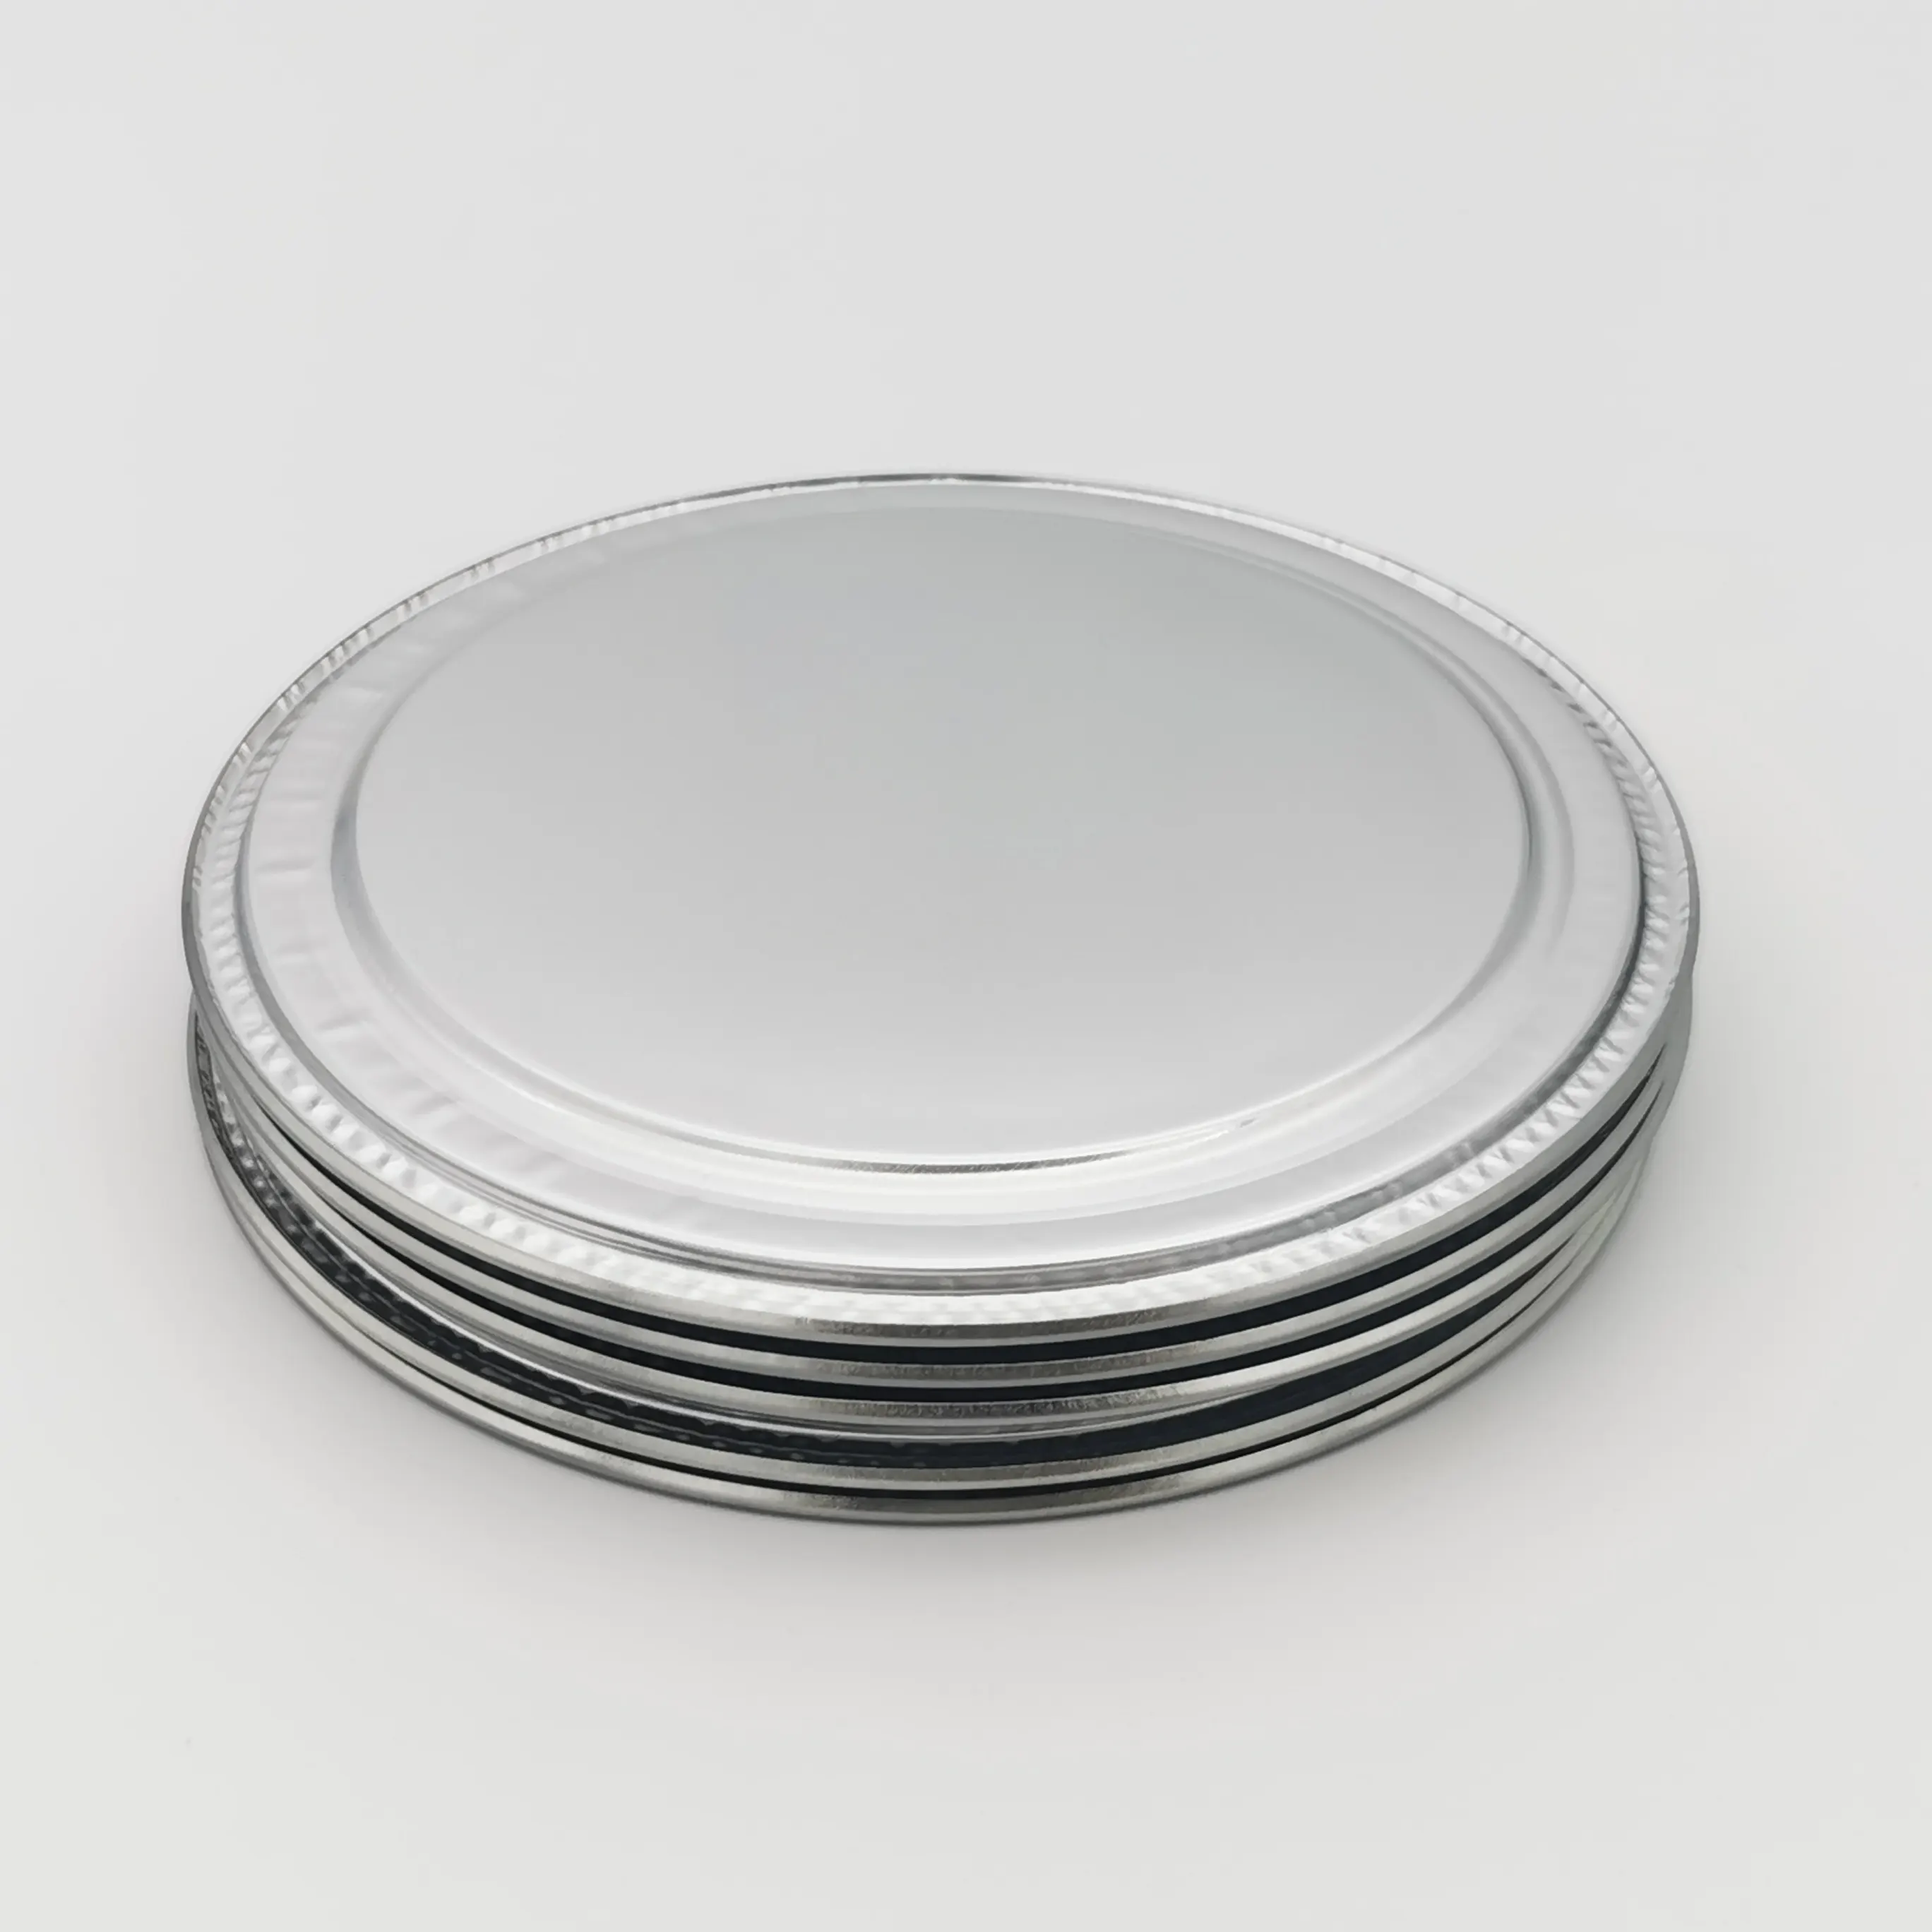 Оловянное кольцо и заглушка с алюминиевой подкладкой, крышка для сушеных пищевых банок